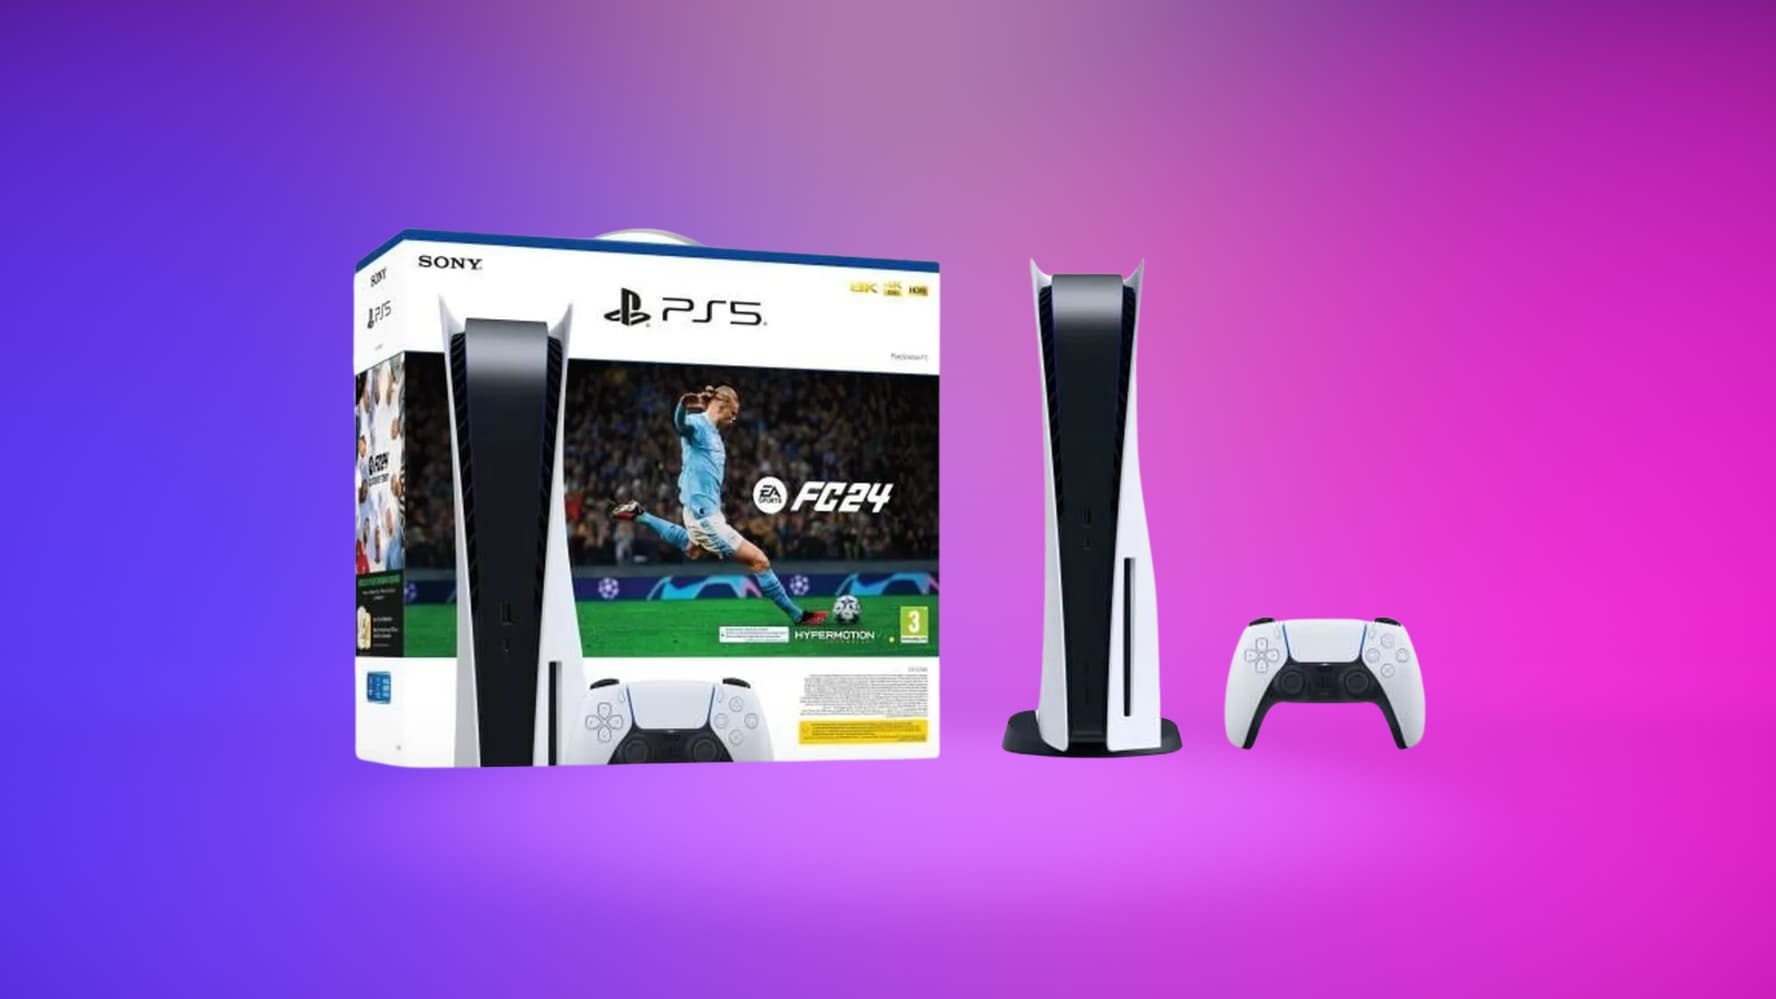 EA Sports FC 24 : jouez-y presque gratuitement sur PS5 avant sa sortie !